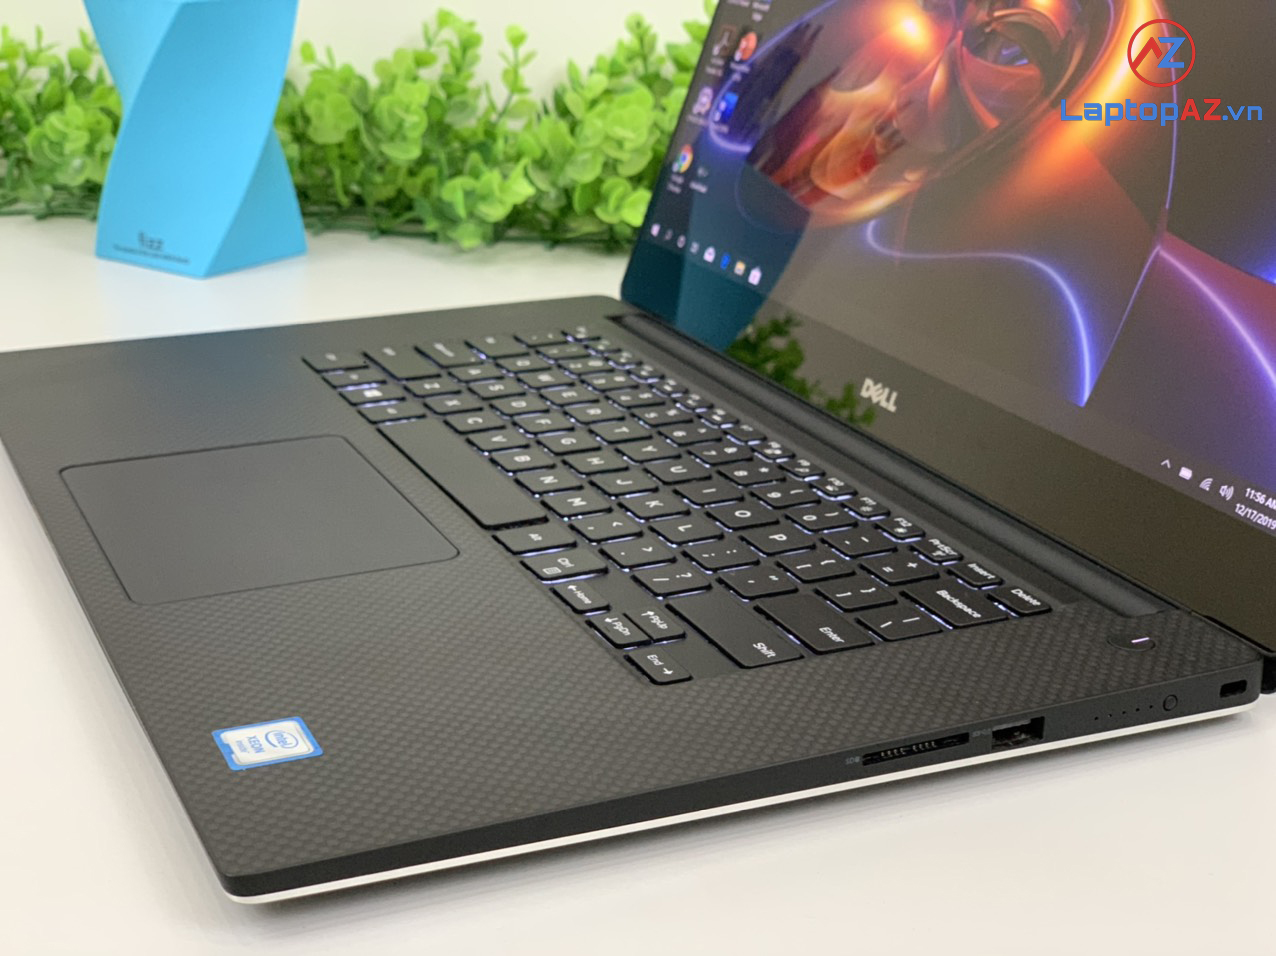 Cảm nhận sức mạnh hấp dẫn của laptop Dell 5510 Xeon E3-1505M v5 với hiệu suất cao và không gian lưu trữ lớn. Thiết kế mỏng nhẹ và bền bỉ, cho phép bạn dễ dàng di chuyển và sử dụng laptop khi làm việc hay giải trí. Hãy cùng trải nghiệm sự khác biệt của dòng laptop này.